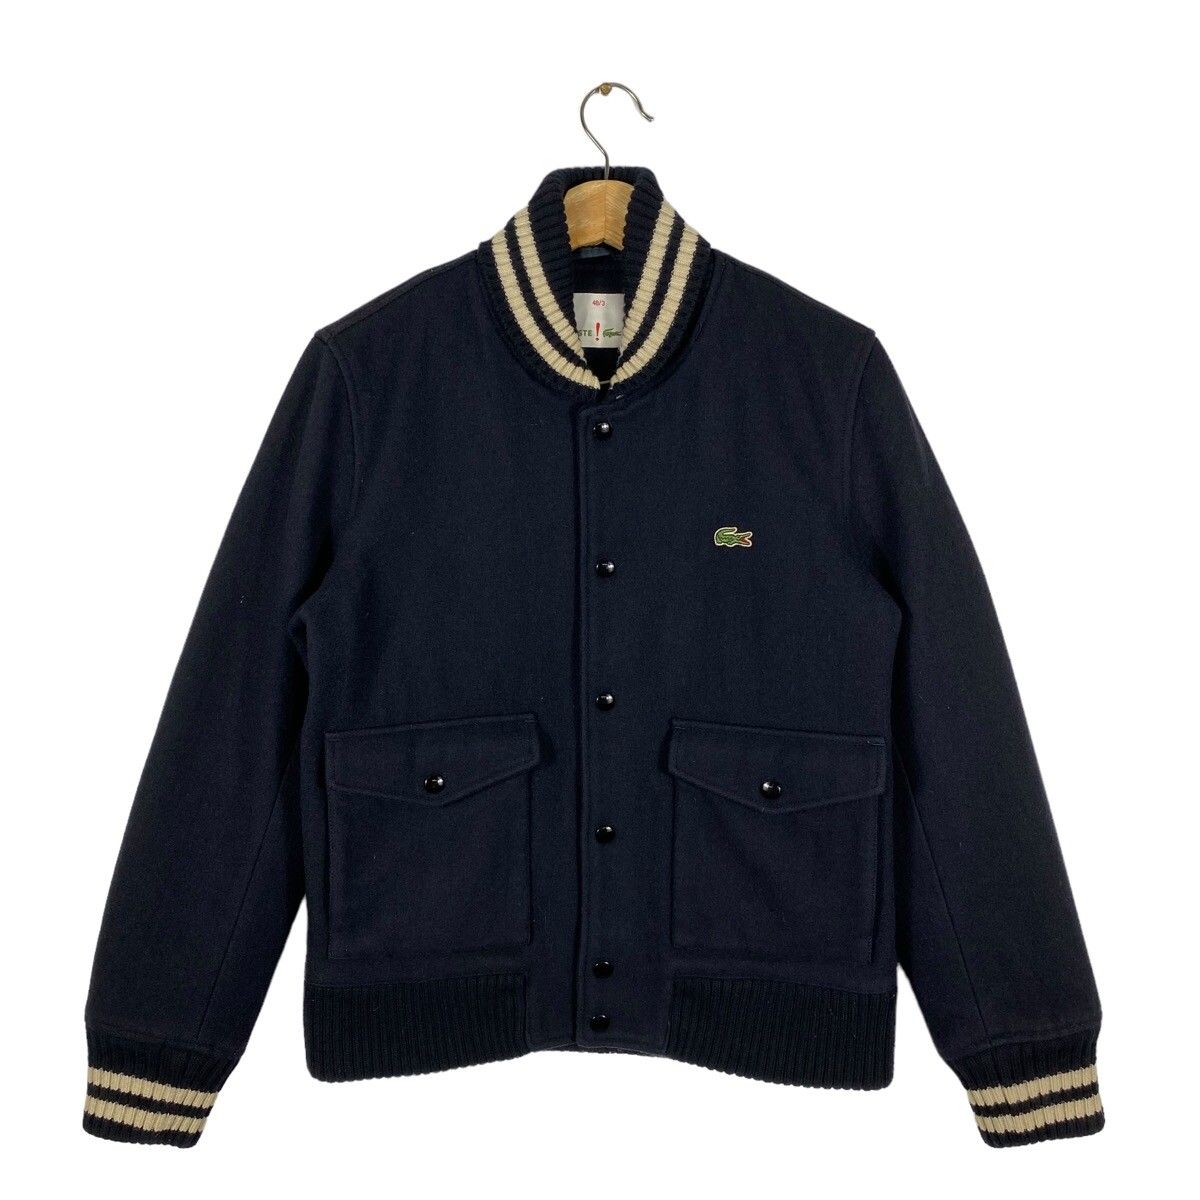 Vintage Lacoste Varsity Bomber Wool Jacket Size 48/3 (M) - 1